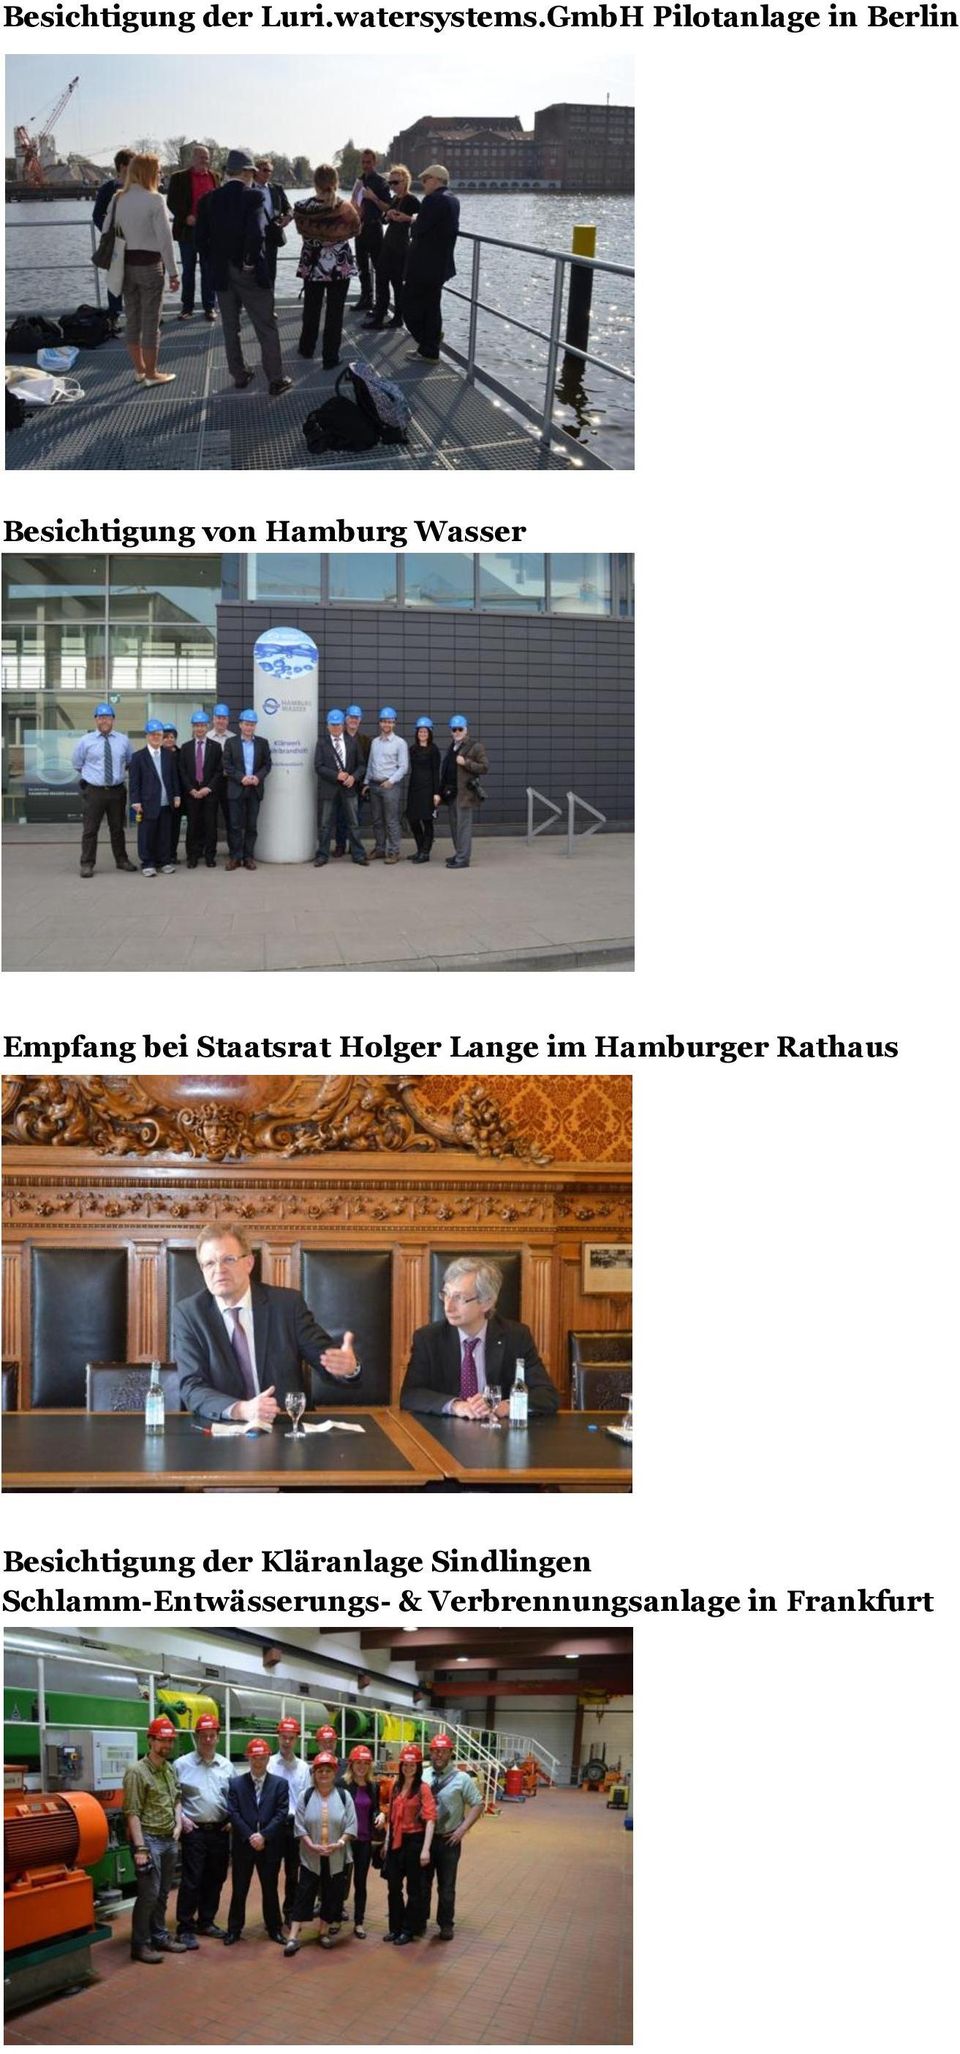 Empfang bei Staatsrat Holger Lange im Hamburger Rathaus